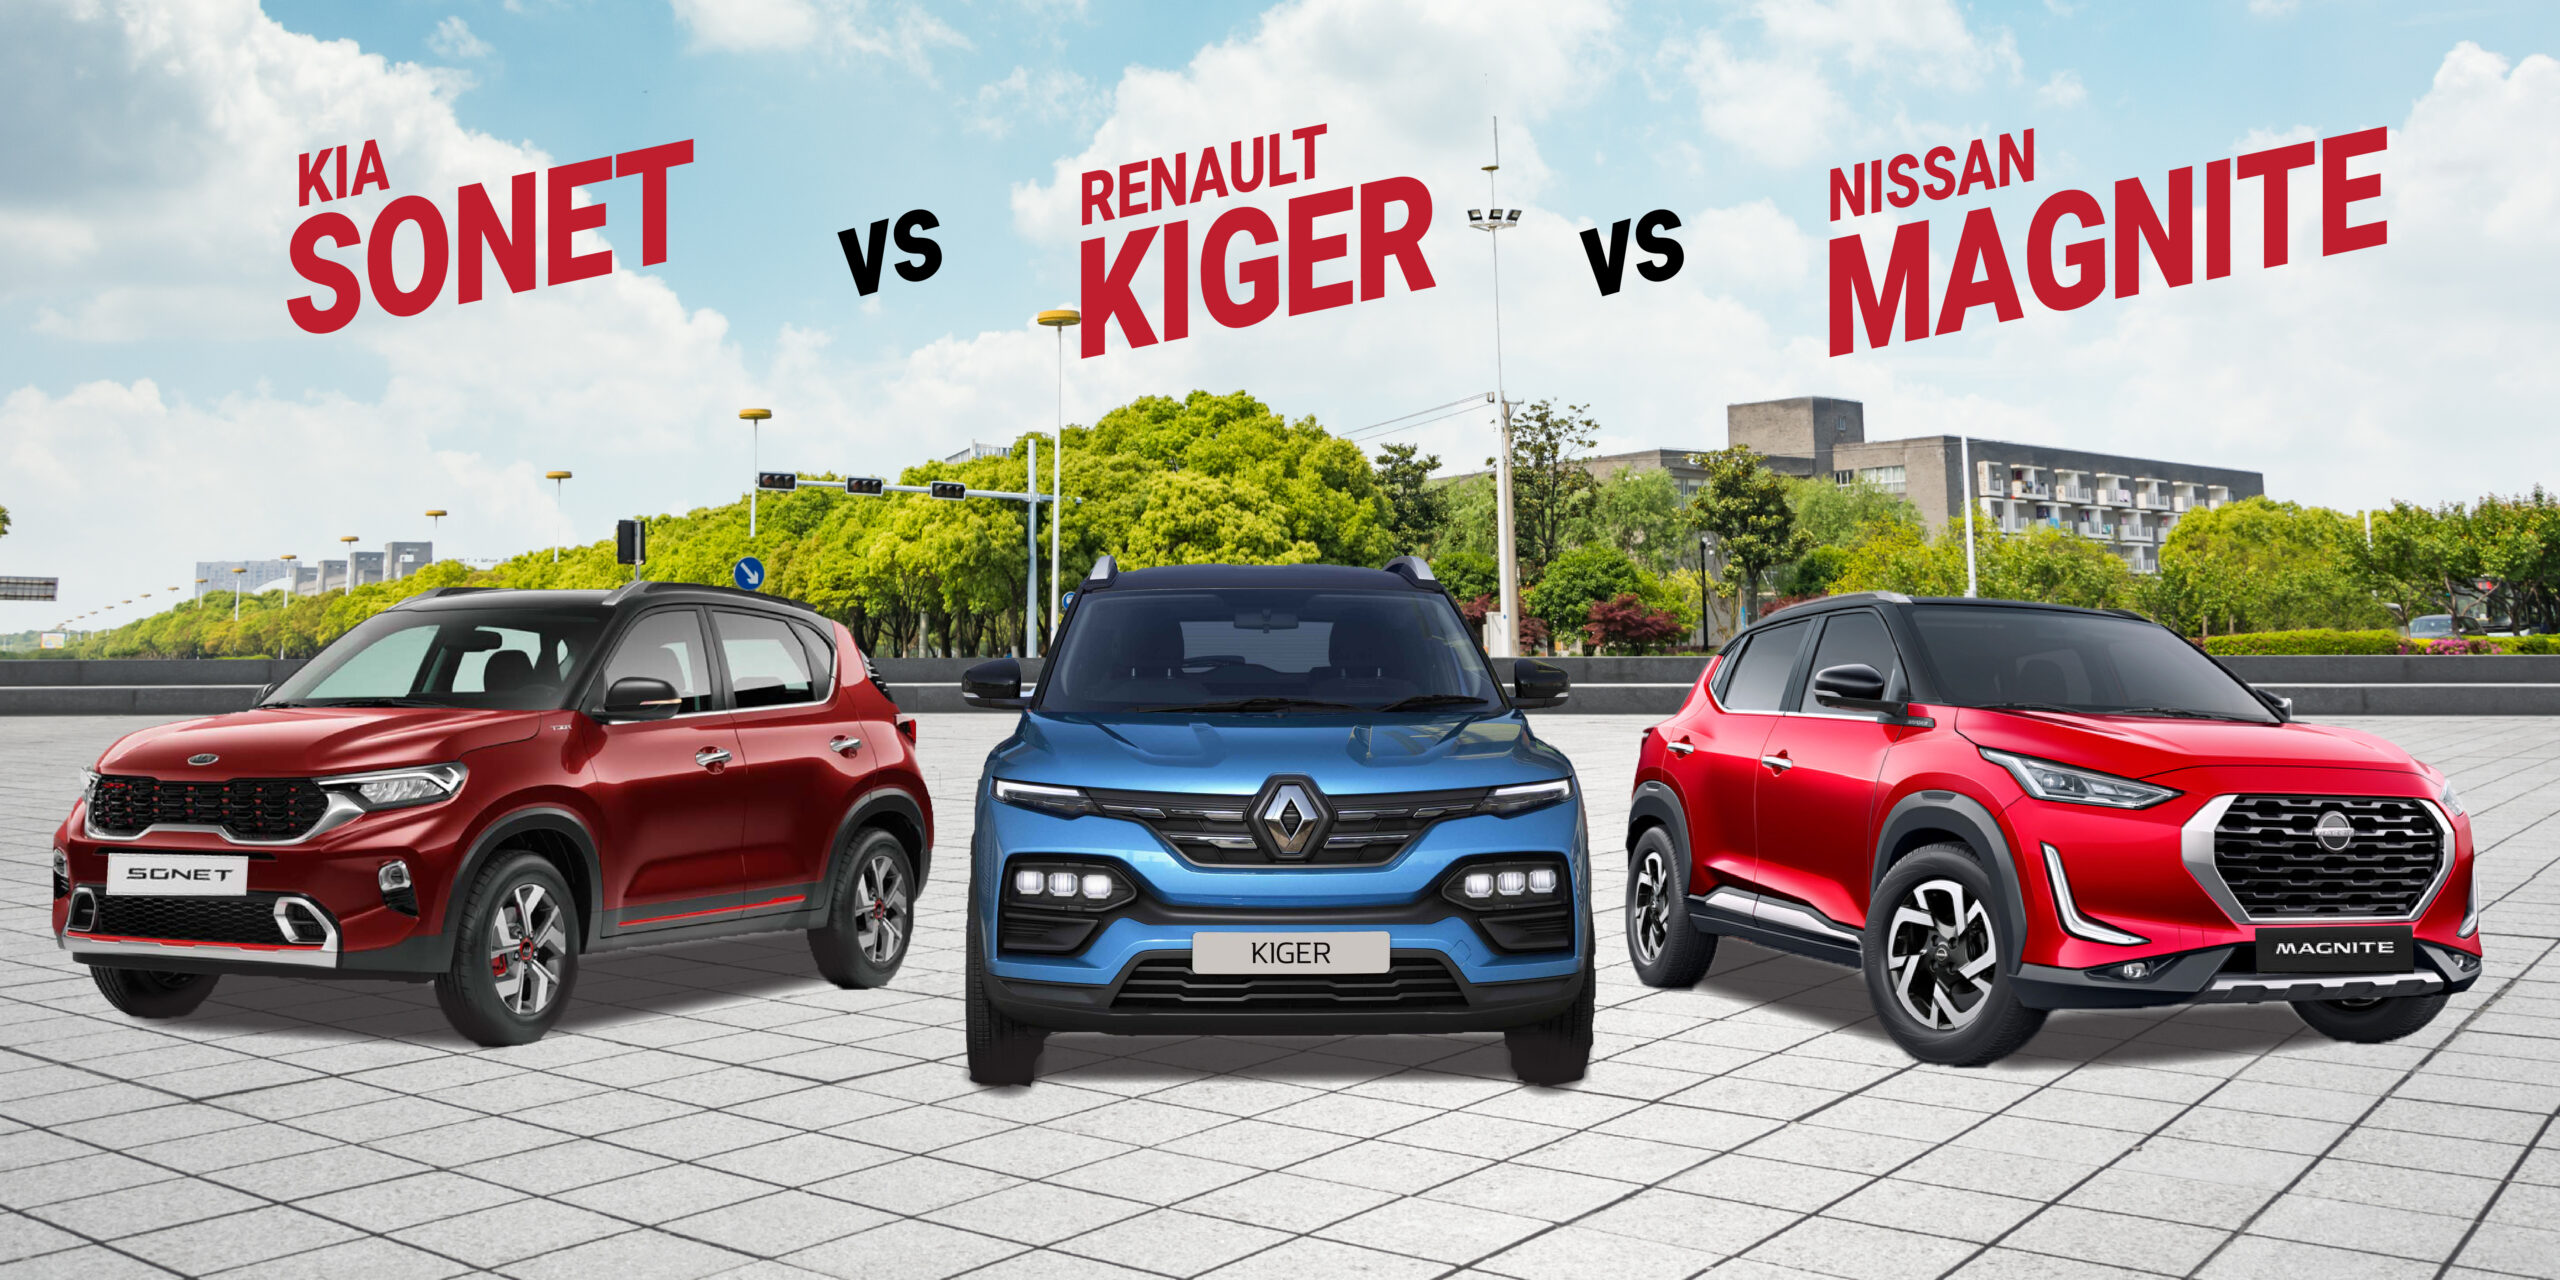 Renault Kiger vs Nissan Magnite vs Kia Sonet|Renault Kiger|Nissan Magnite|Kia Sonet|Nissan Magnite|Renault Kiger|Kia Sonet|Renault Kiger|Nissan Magnite|Kia Sonet